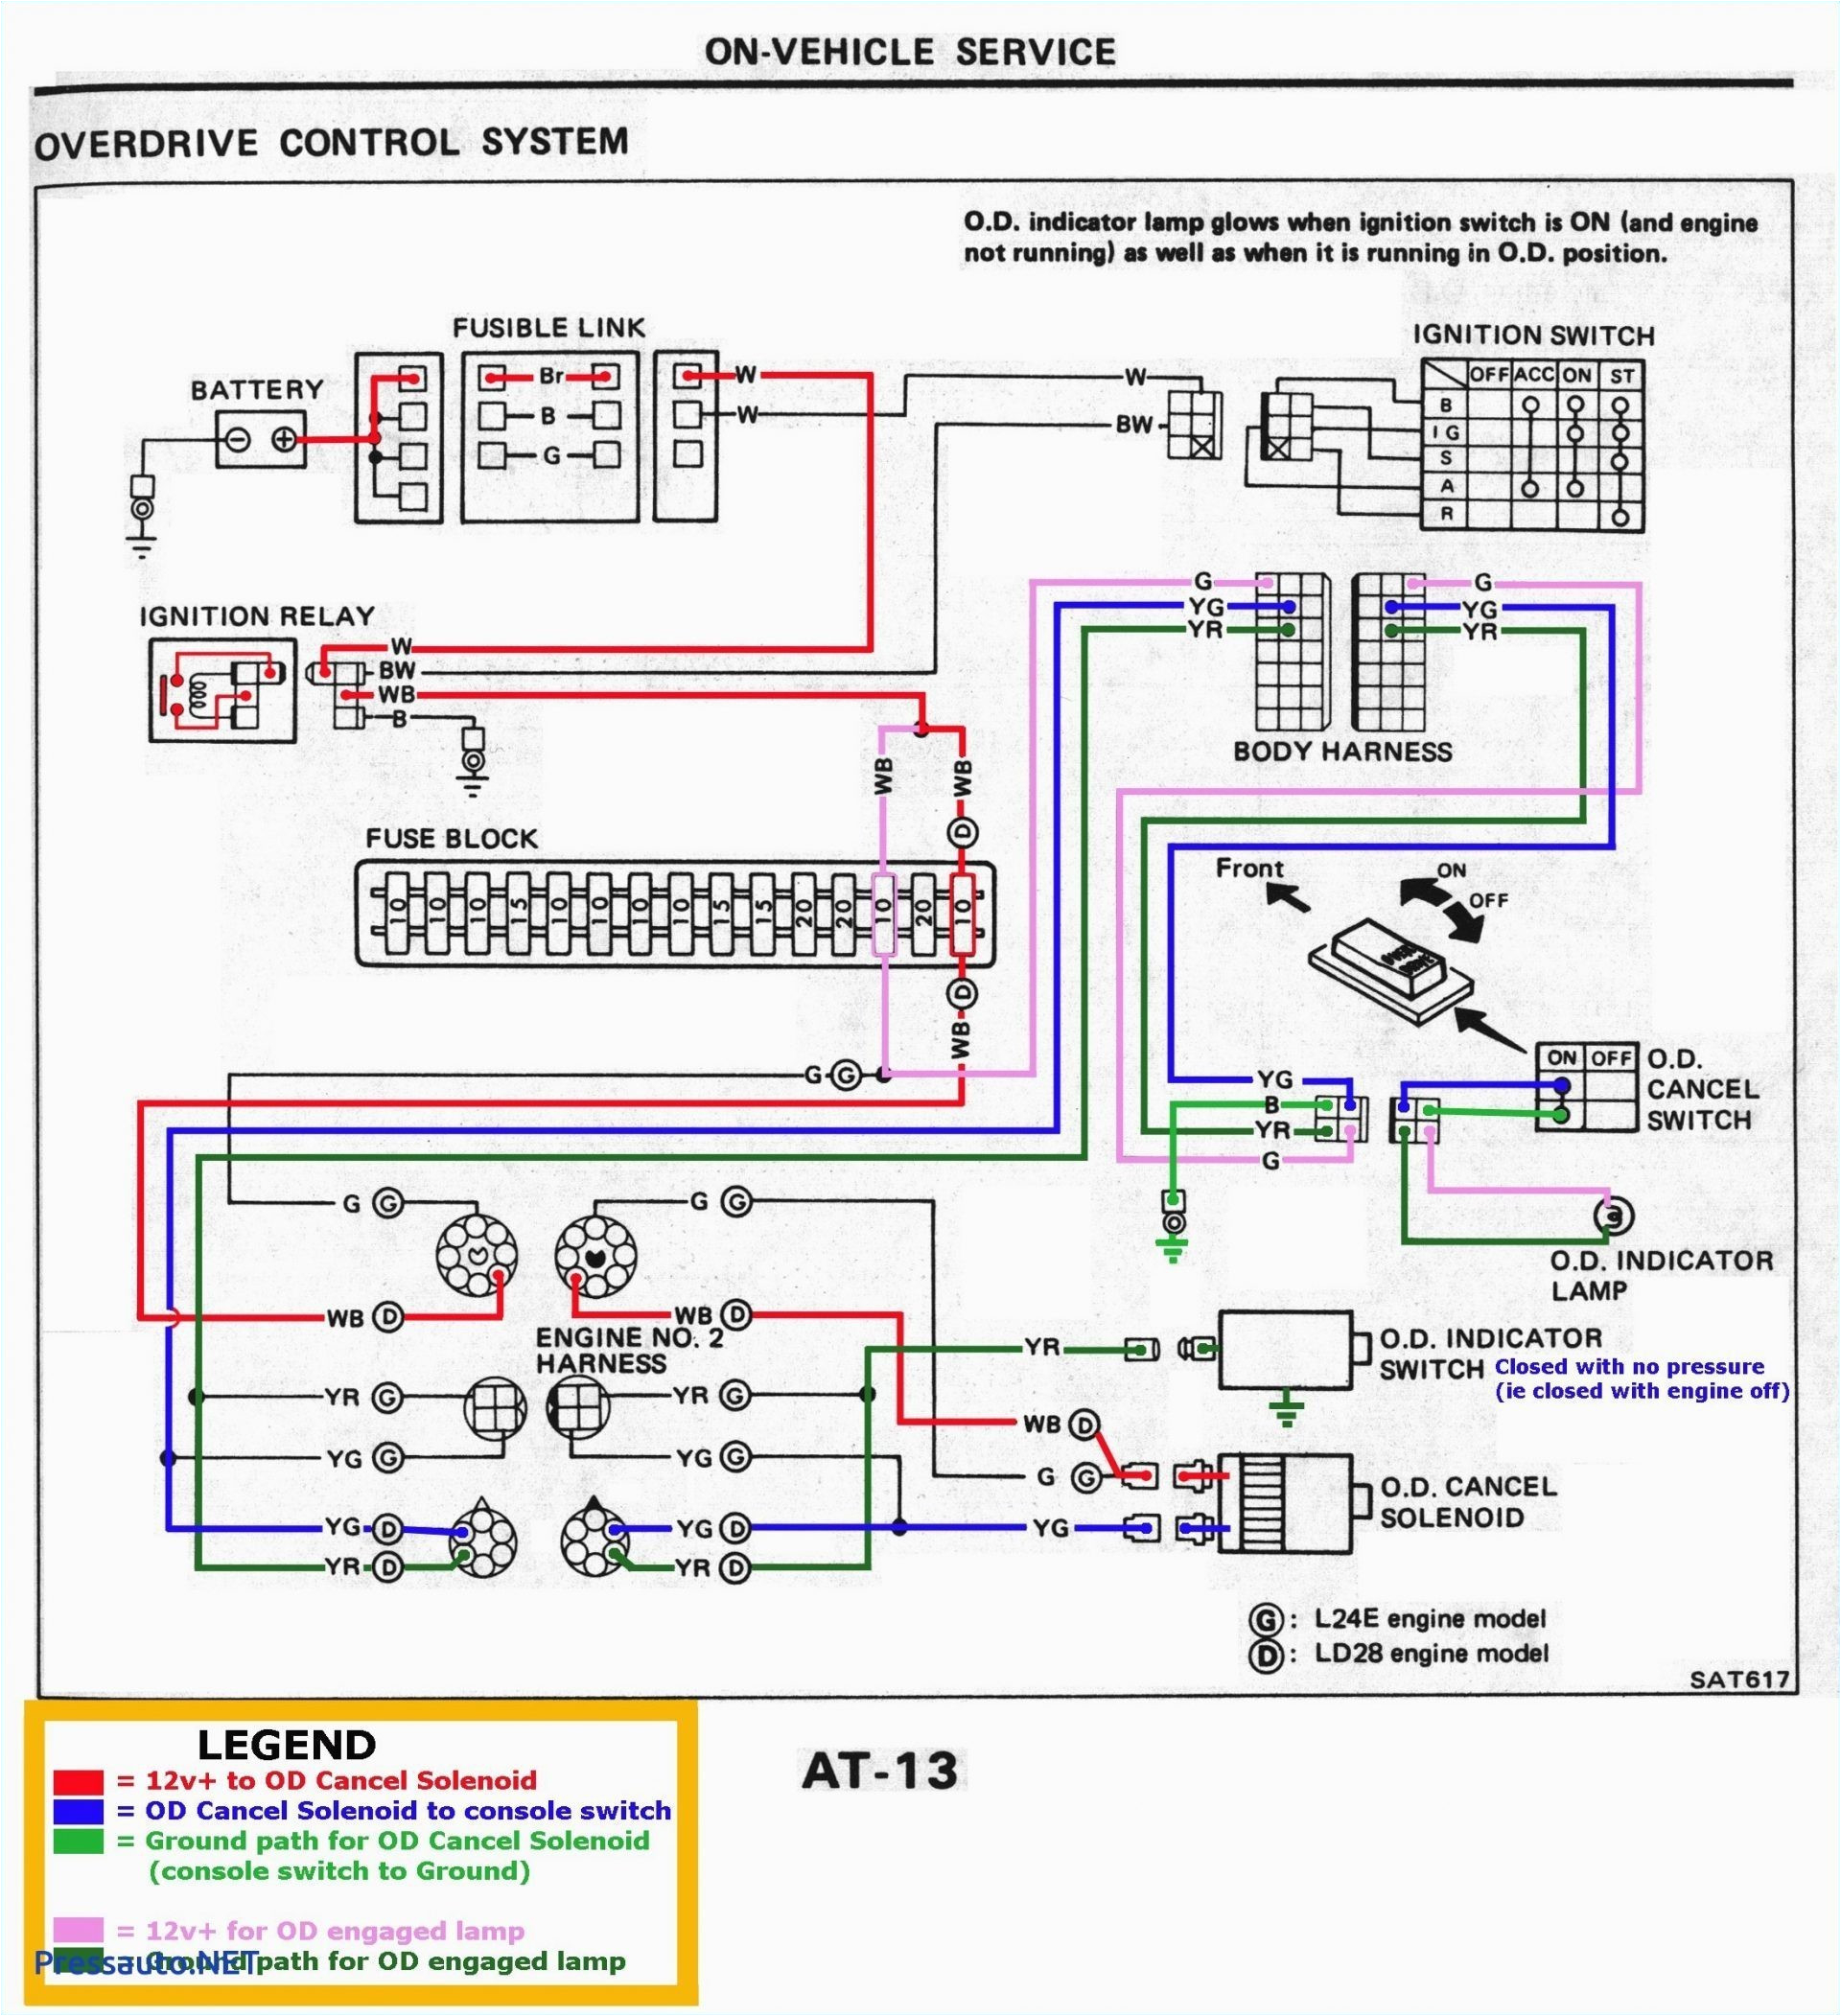 93 dodge caravan ac wiring wiring diagram schematic dodge caravan ac wiring diagram free picture